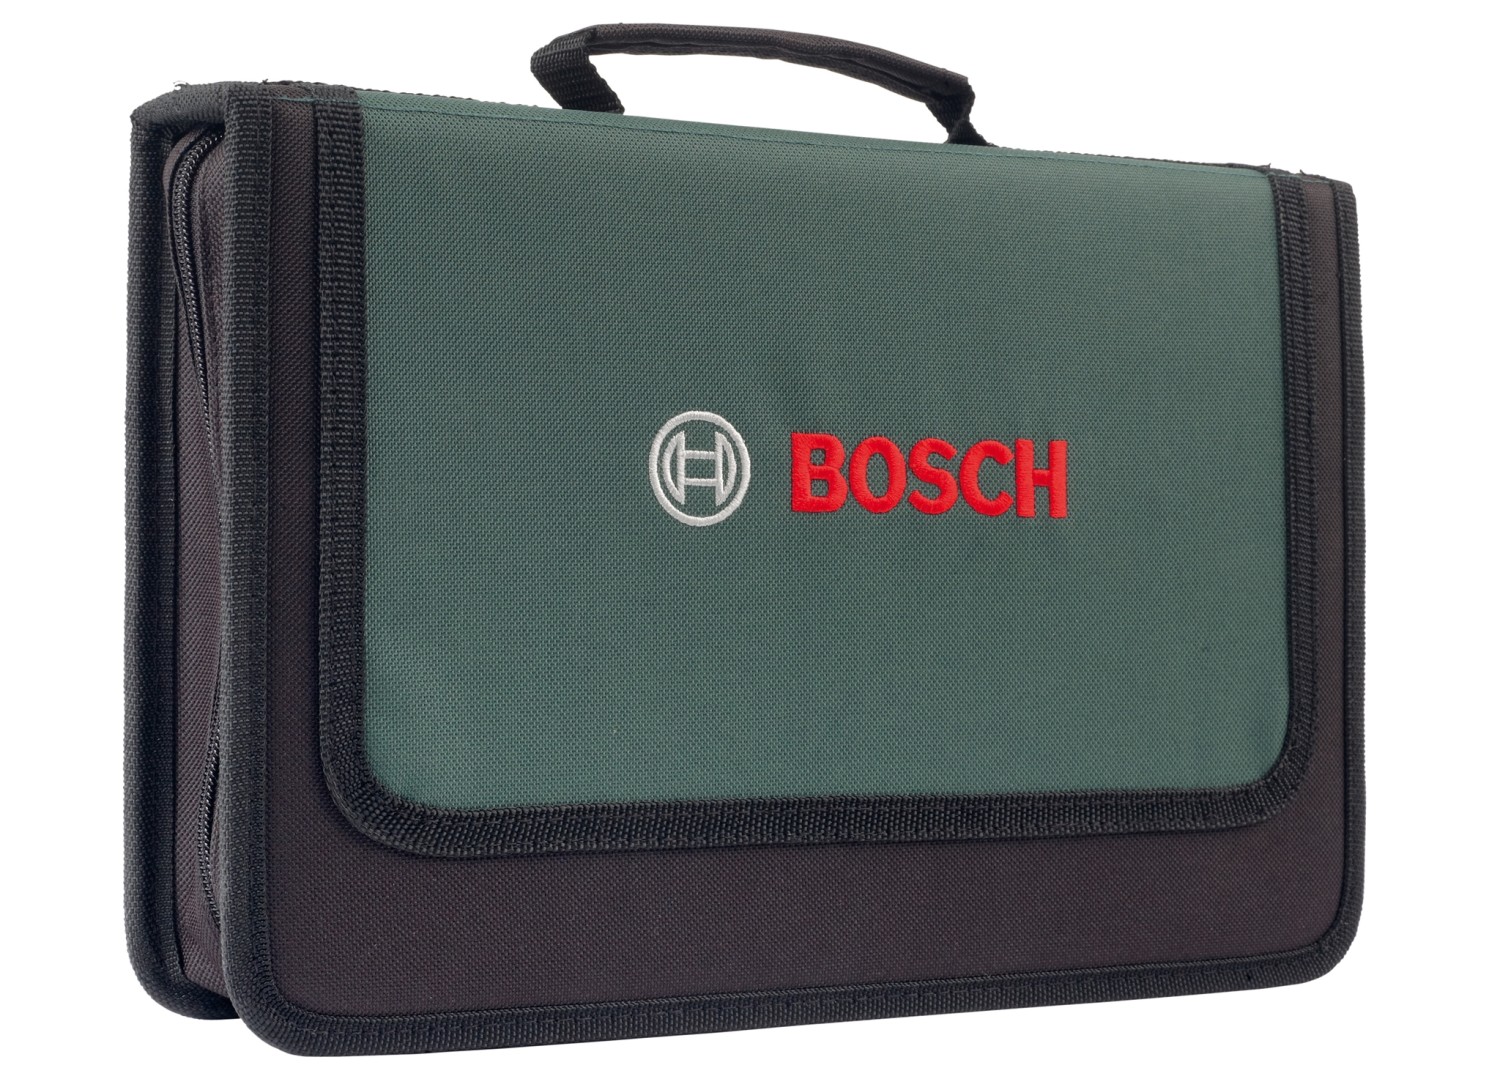 Handwerkzeug-Sets Bosch Universal Werkzeug Set 25-teilig im Test, Bild 2